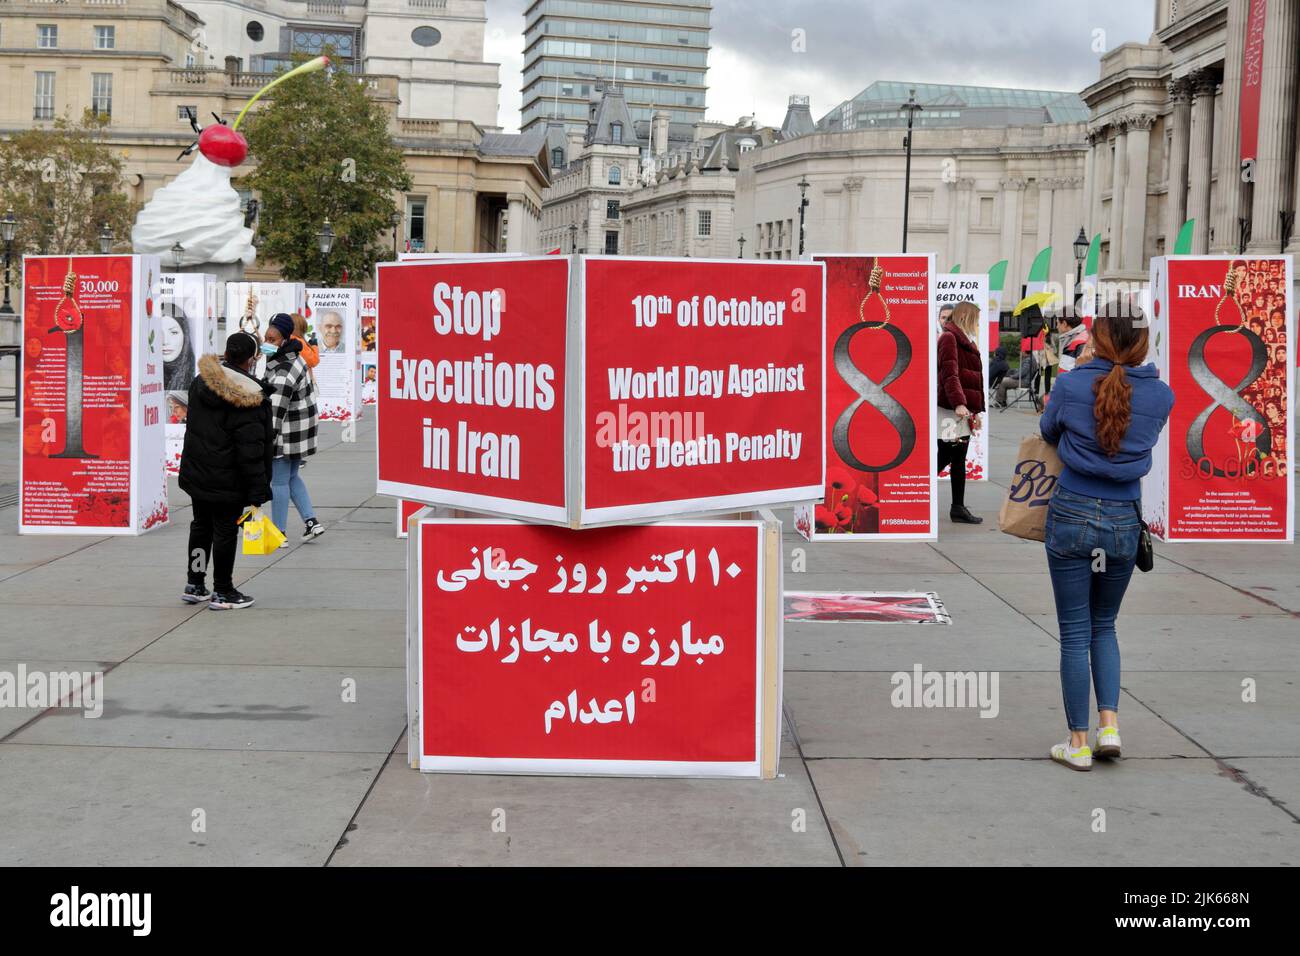 Londra, Regno Unito - 10 ottobre 2020: Protesta contro la pena di morte e le esecuzioni in Iran durante la Giornata Mondiale contro la pena di morte in piazza Trafalgar Foto Stock